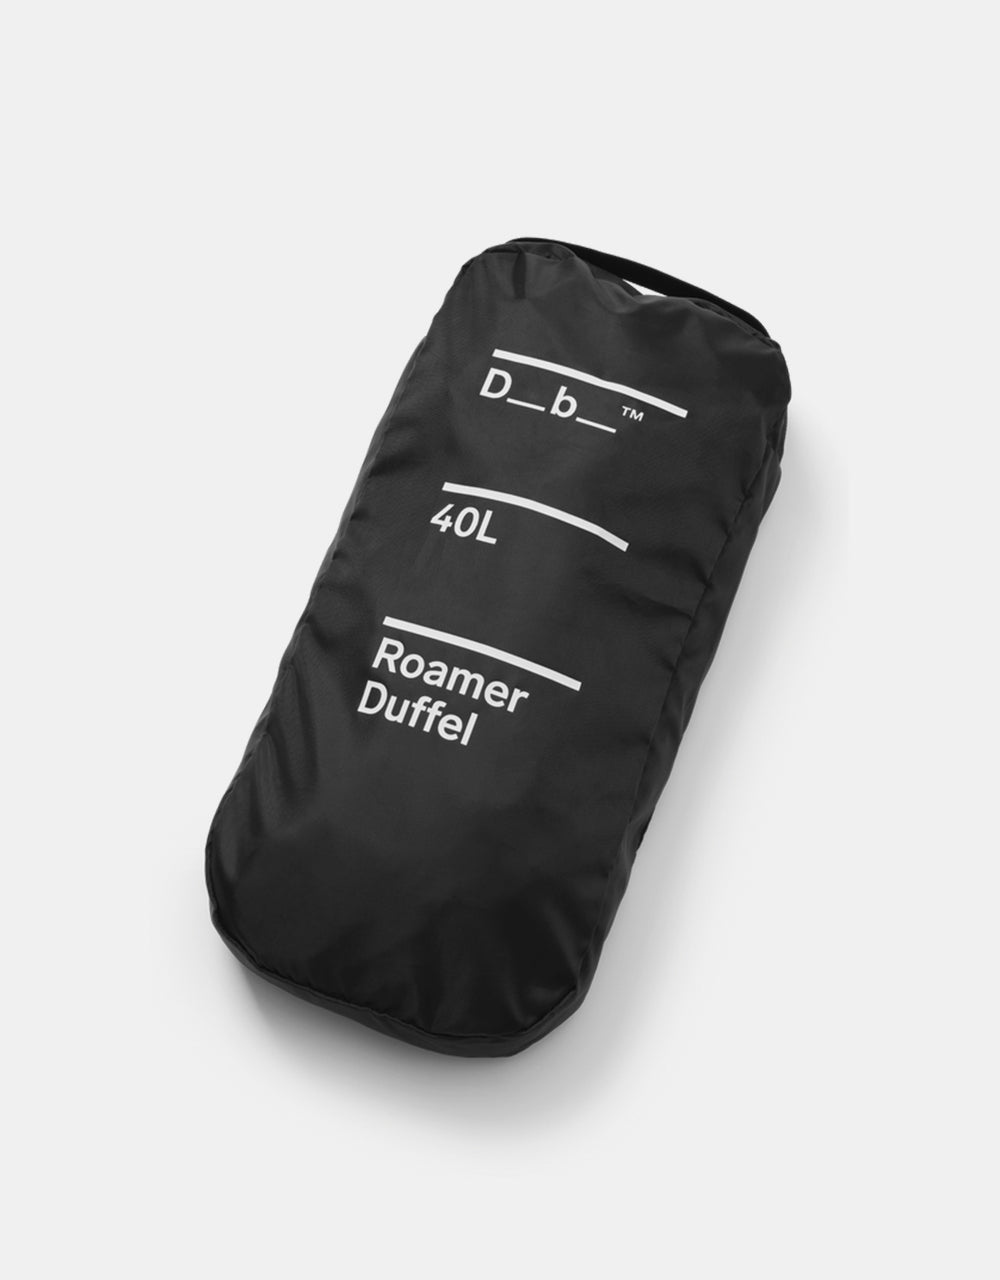 Db Roamer 40L Duffel Bag - Black Out